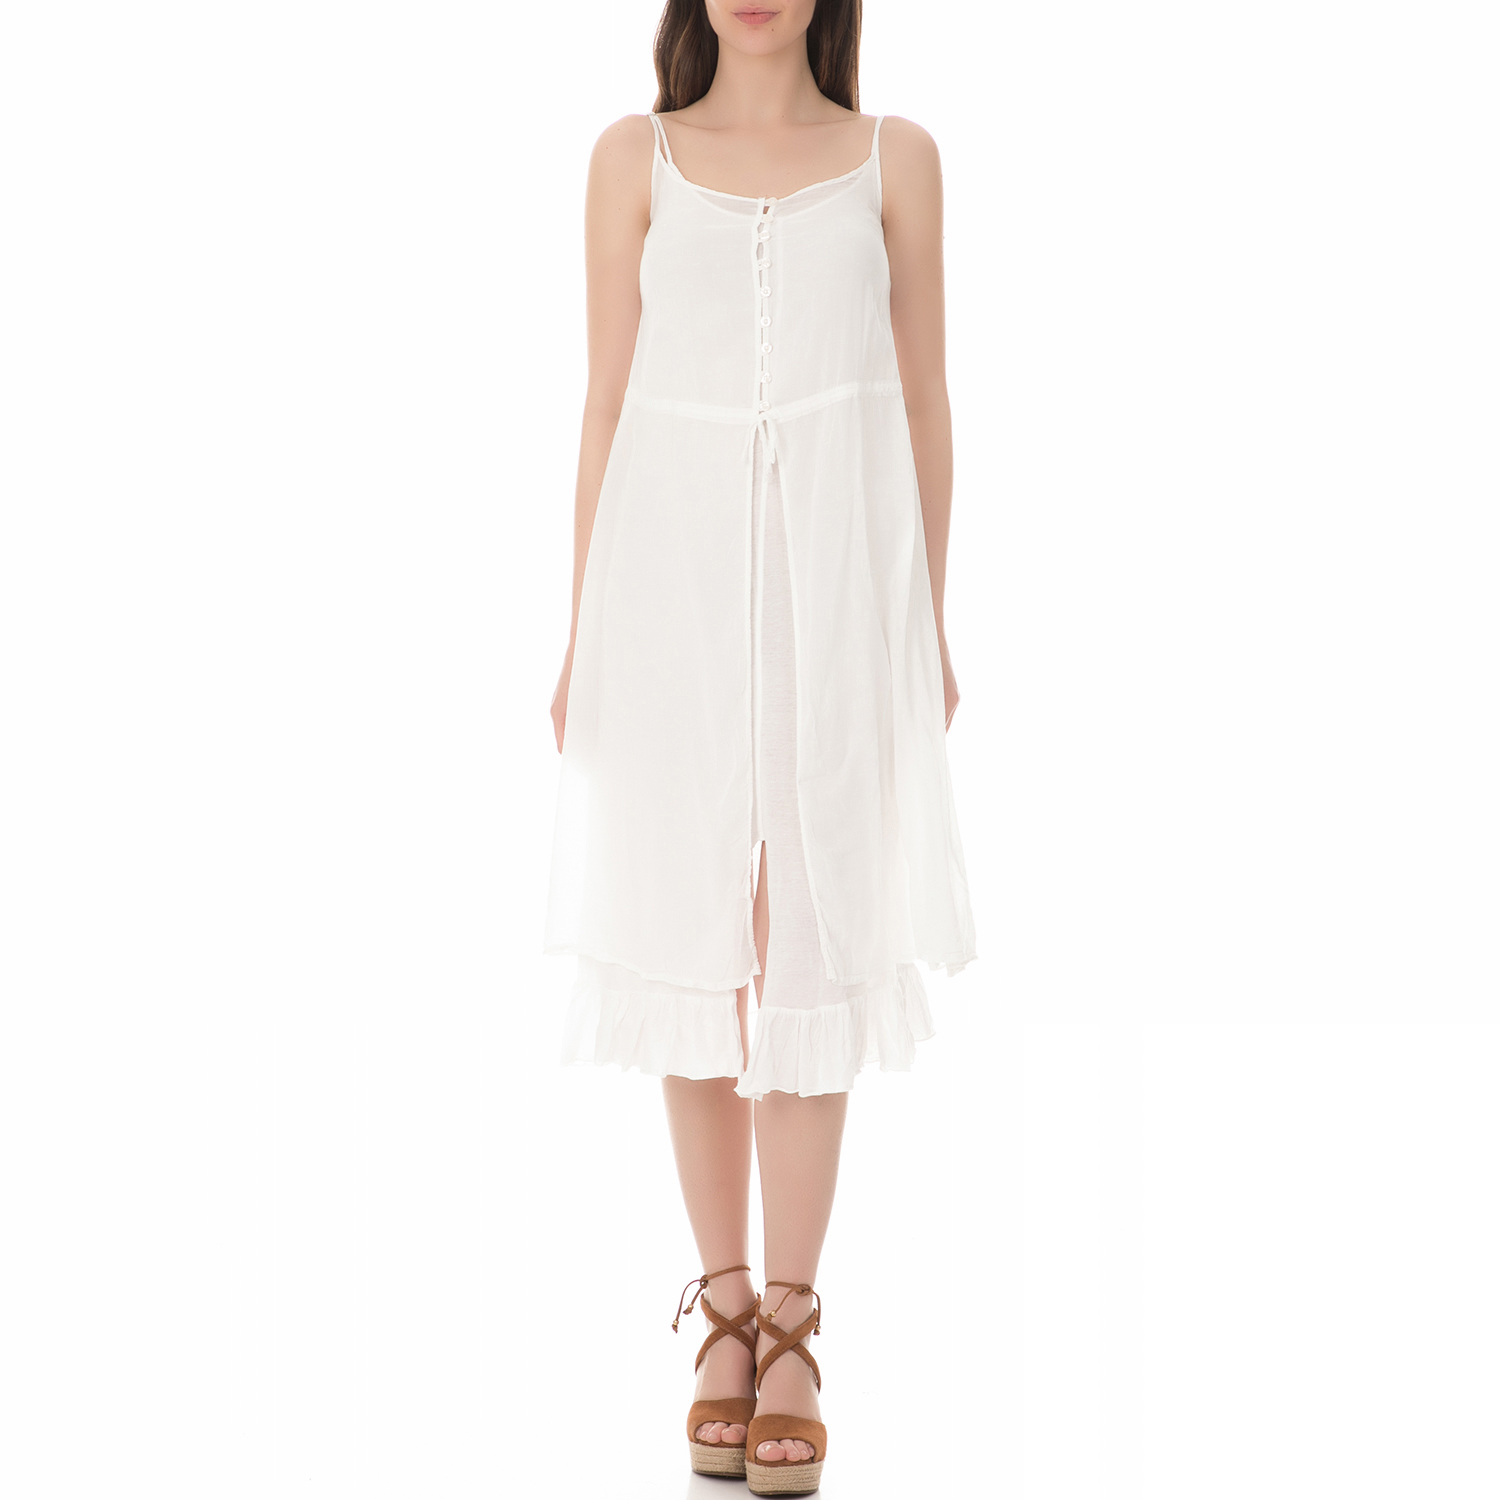 Γυναικεία/Ρούχα/Φορέματα/Μέχρι το γόνατο BRAEZ - Γυναικείο μίντι φόρεμα BRAEZ λευκό